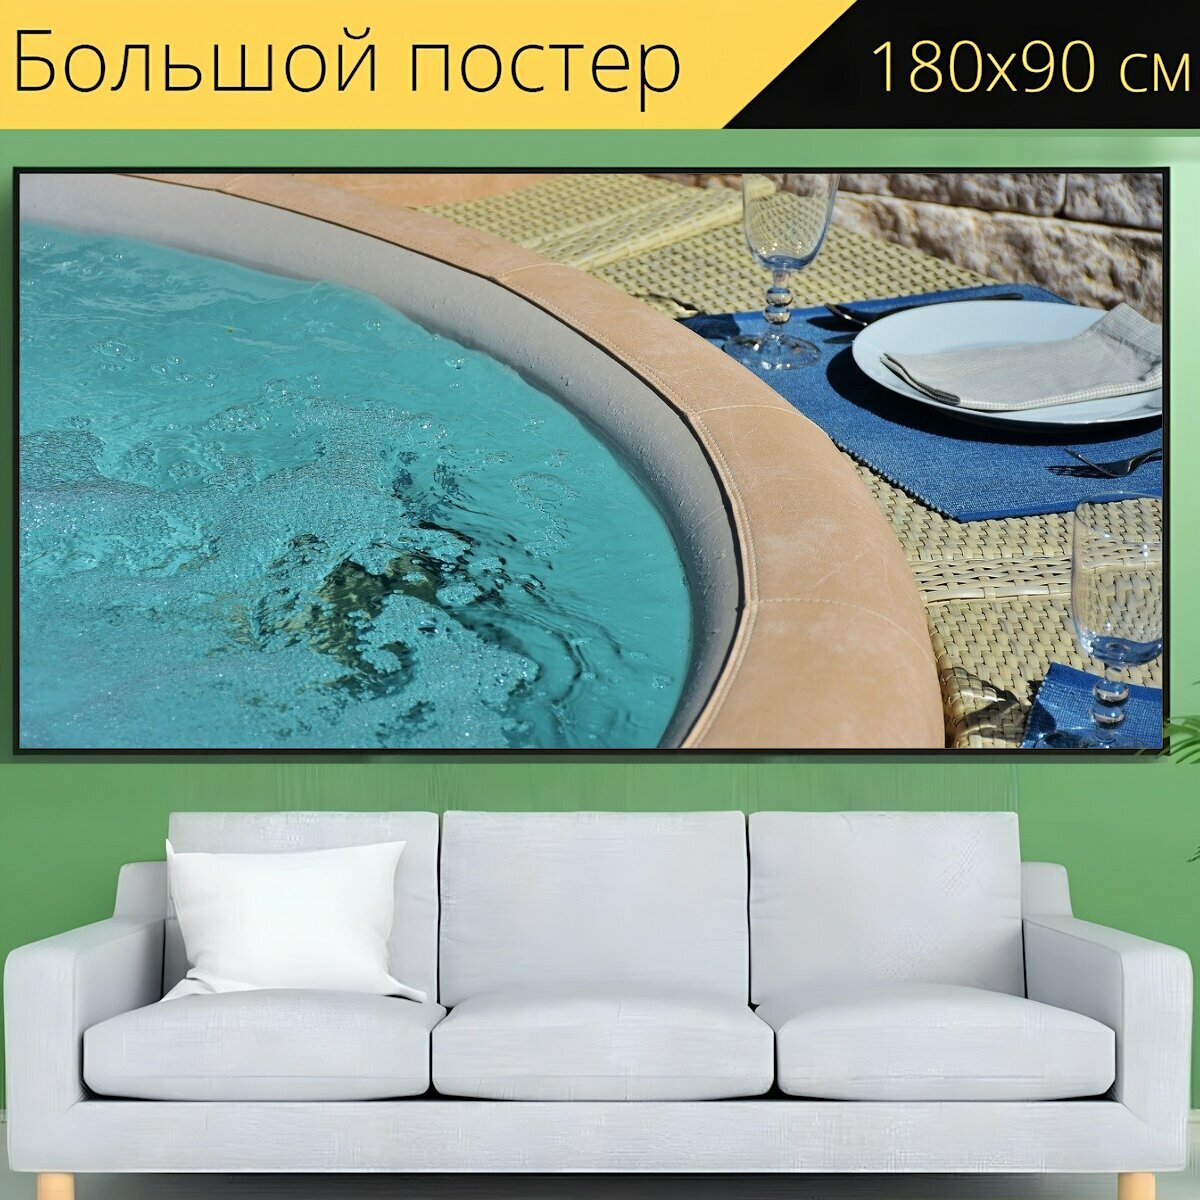 Большой постер "Водоворот, ванна, открытый" 180 x 90 см. для интерьера